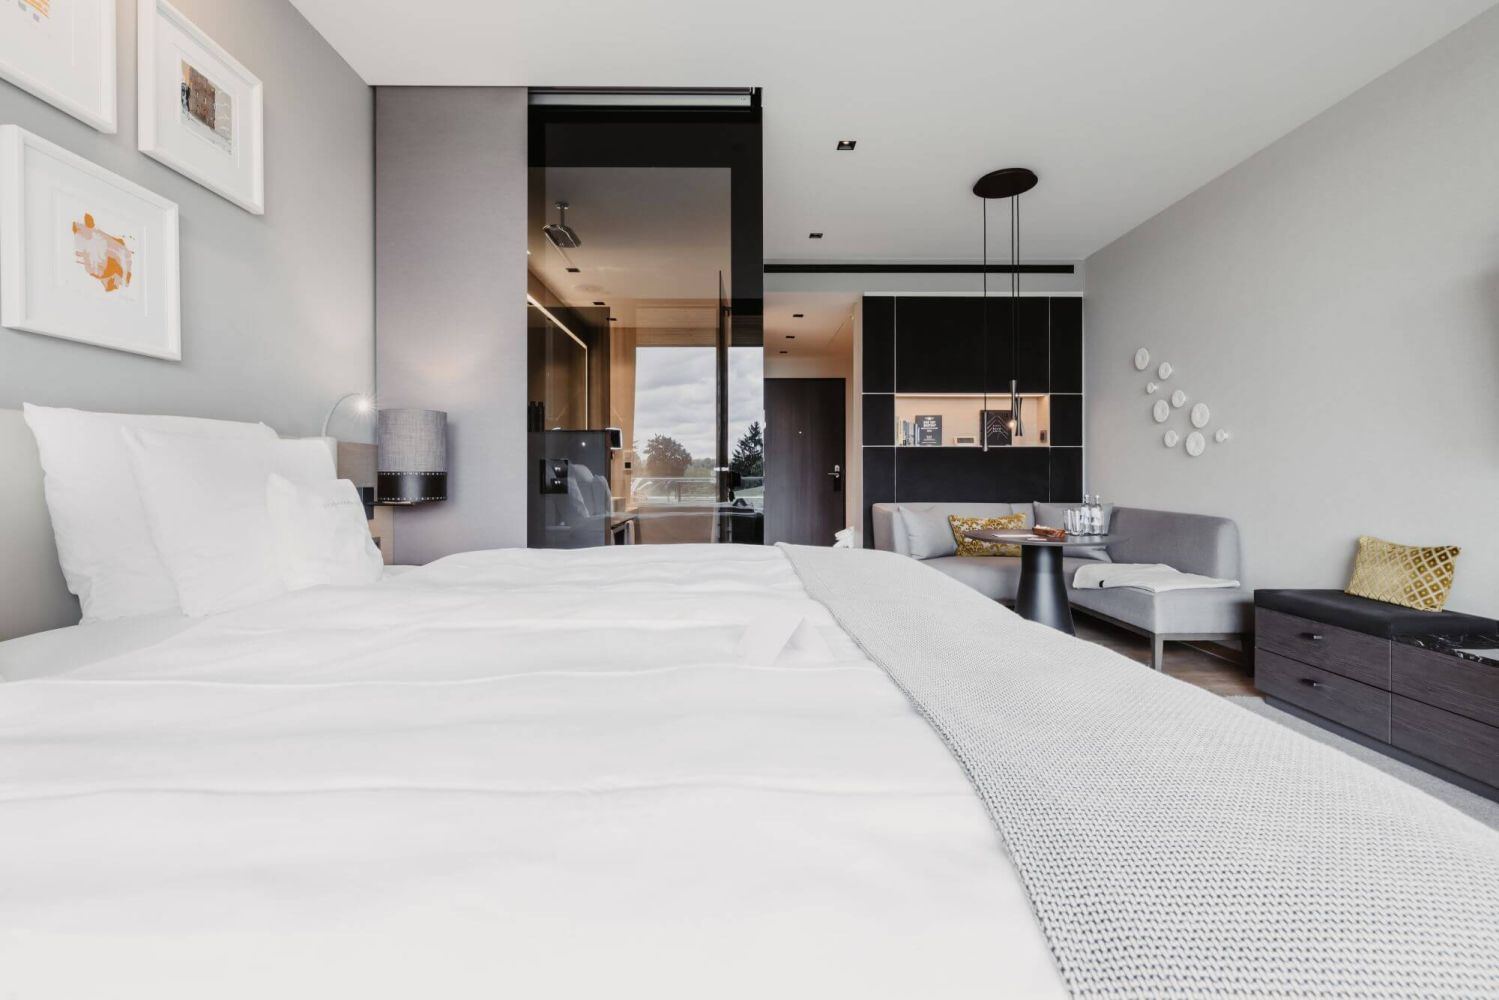 Lichtdurchflutetes Zimmer mit moderner Einrichtung, gemütlichem Bett und grauer Eckcouch